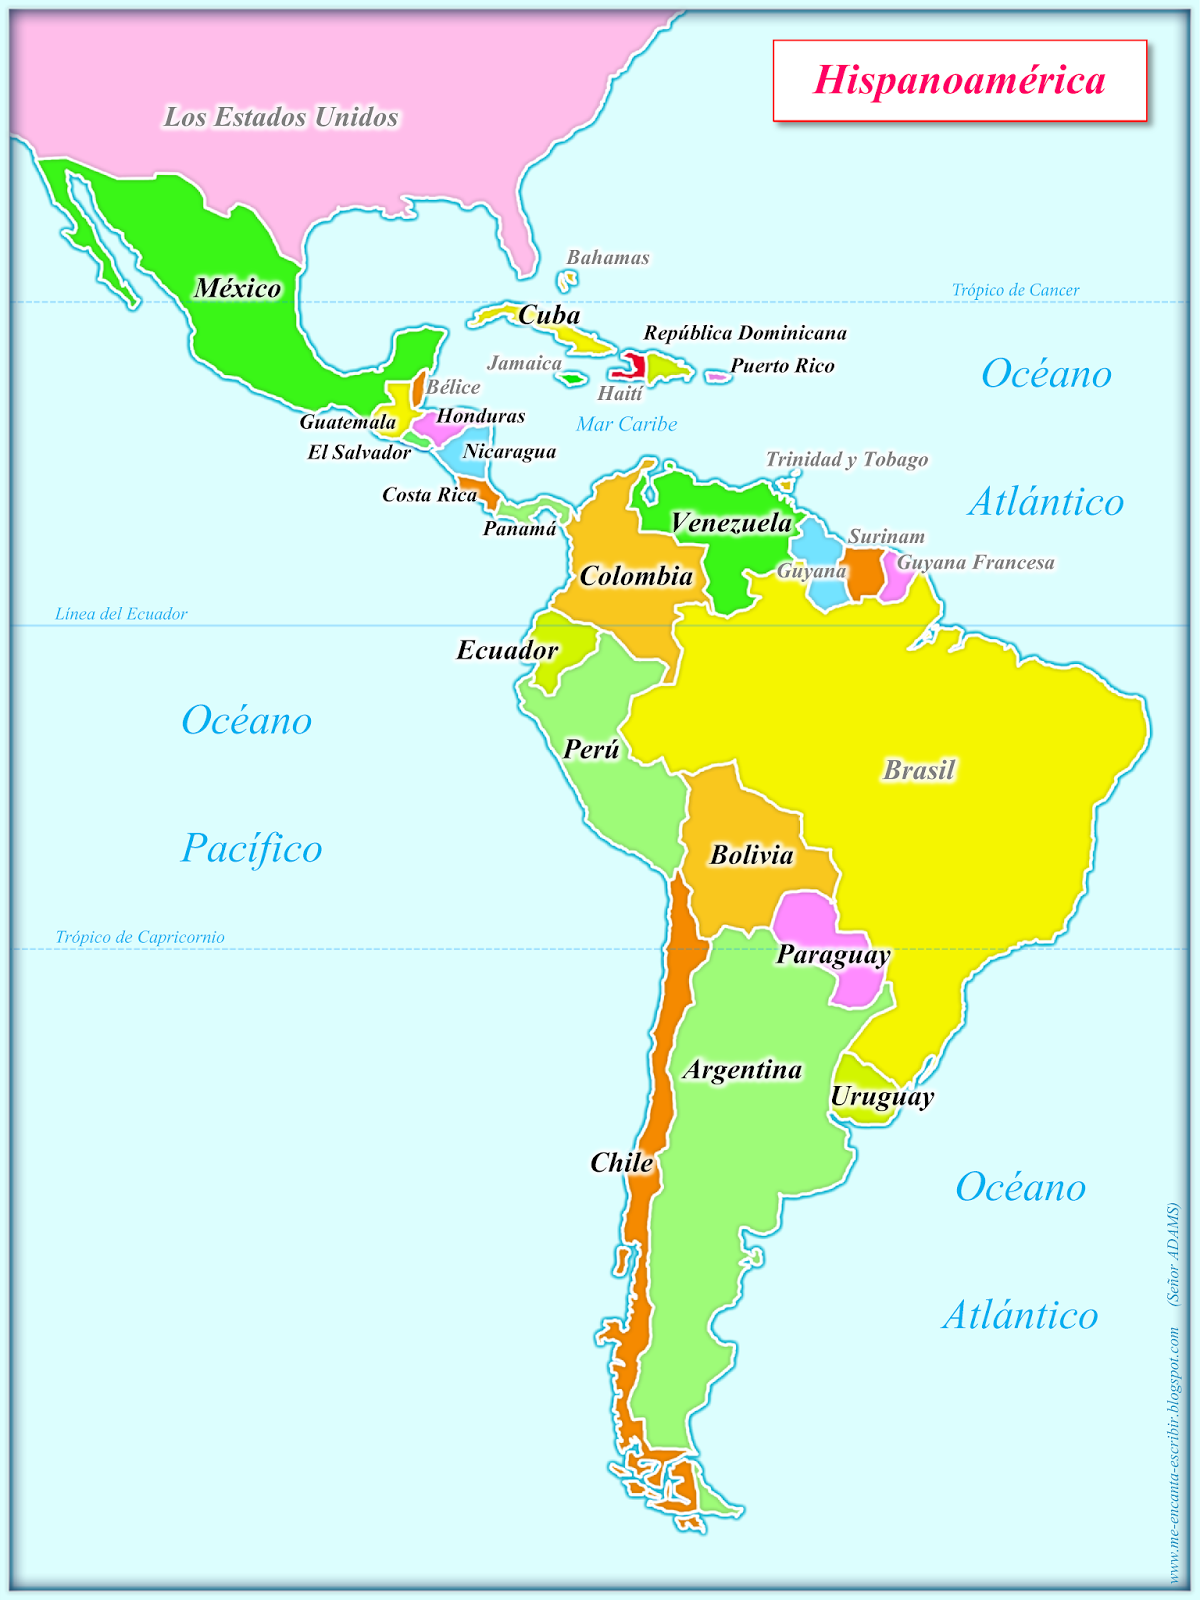 Me encanta escribir en español: Mapa de Hispanoamérica